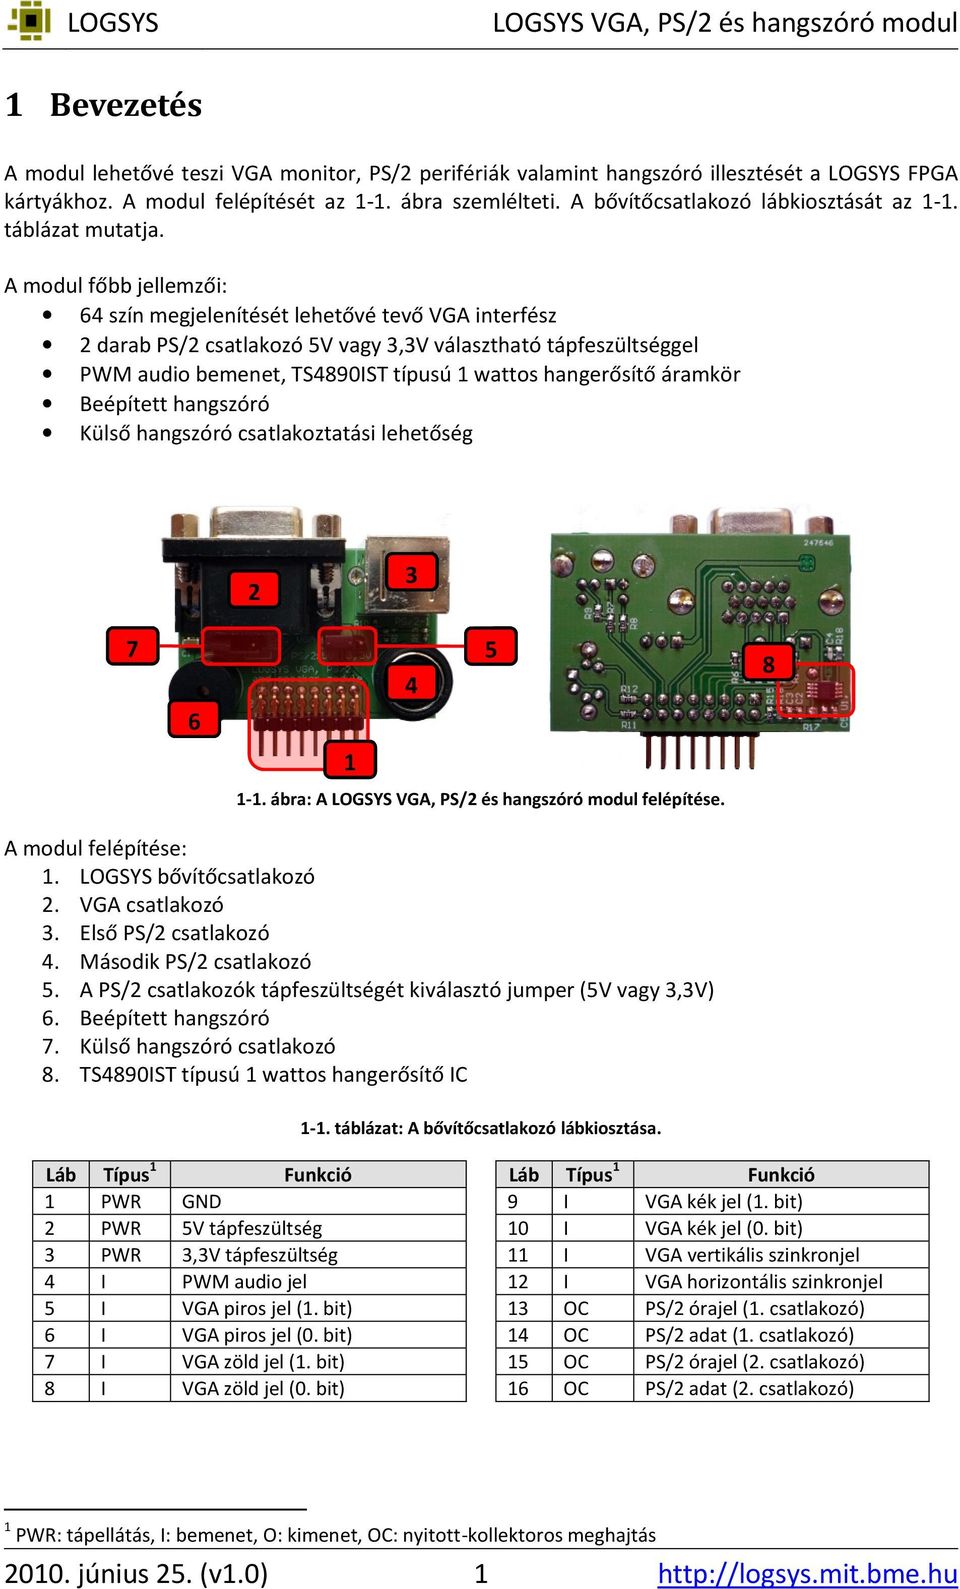 A modul főbb jellemzői: 6 szín megjelenítését lehetővé tevő VGA interfész darab PS/ csatlakozó V vagy,v választható tápfeszültséggel PWM audio bemenet, TS89ST típusú wattos hangerősítő áramkör